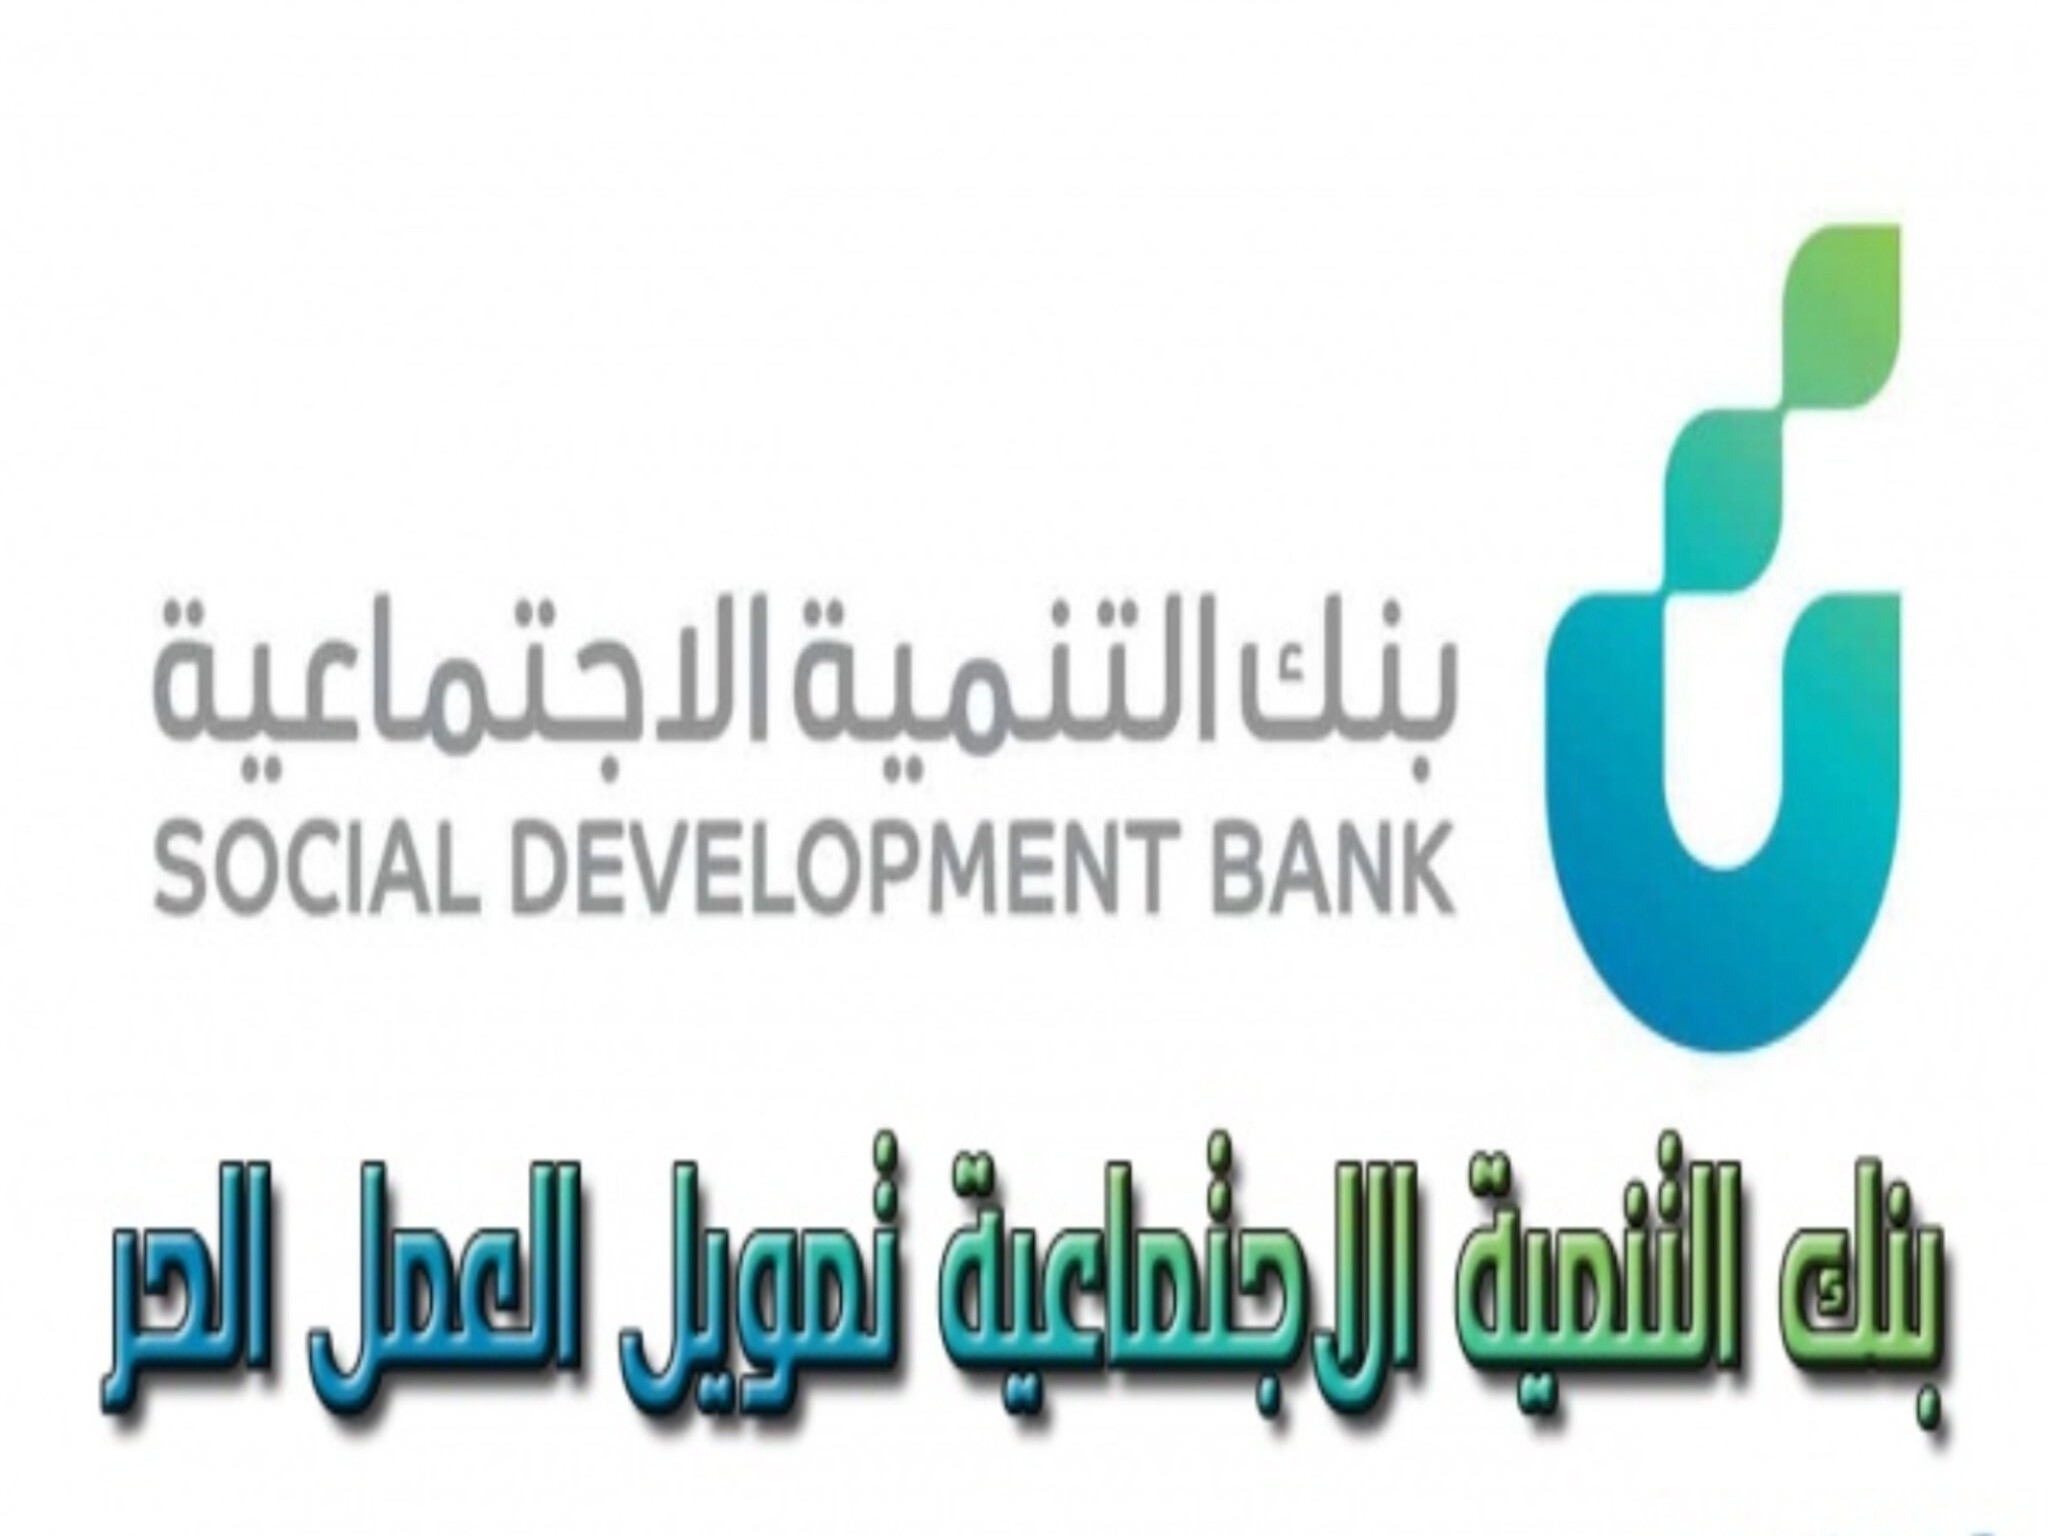 تمويل العمل الحر من بنك التنمية الاجتماعية1445ه بالشروط وخطوات التقديم